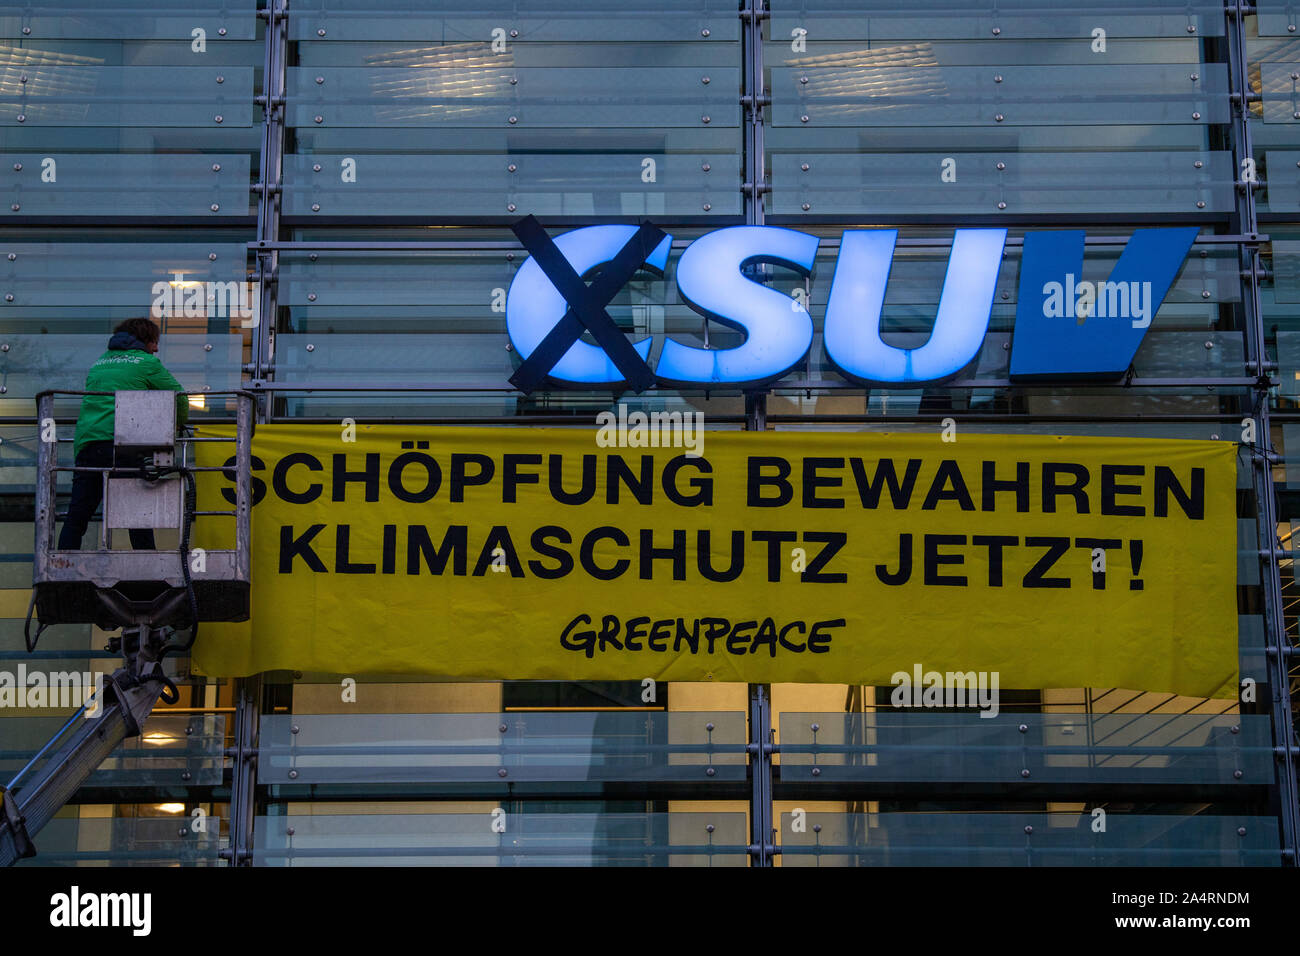 Munich, Allemagne. 16 Oct, 2019. Les militants de l'organisation Greenpeace modifier le logo à la direction de la CSU. Avec une action de protestation à l'administration centrale du parti CSU, les écologistes de Greenpeace dénonce la politique climatique de l'Union européenne. Tôt mercredi matin, des militants ont conduit un chariot élévateur en face de l'immeuble à Munich et a changé la partie logo sur la façade en verre : 'CSU' est devenu' (véhicules utilitaires sport). Credit : Lino Mirgeler/dpa/Alamy Live News Banque D'Images